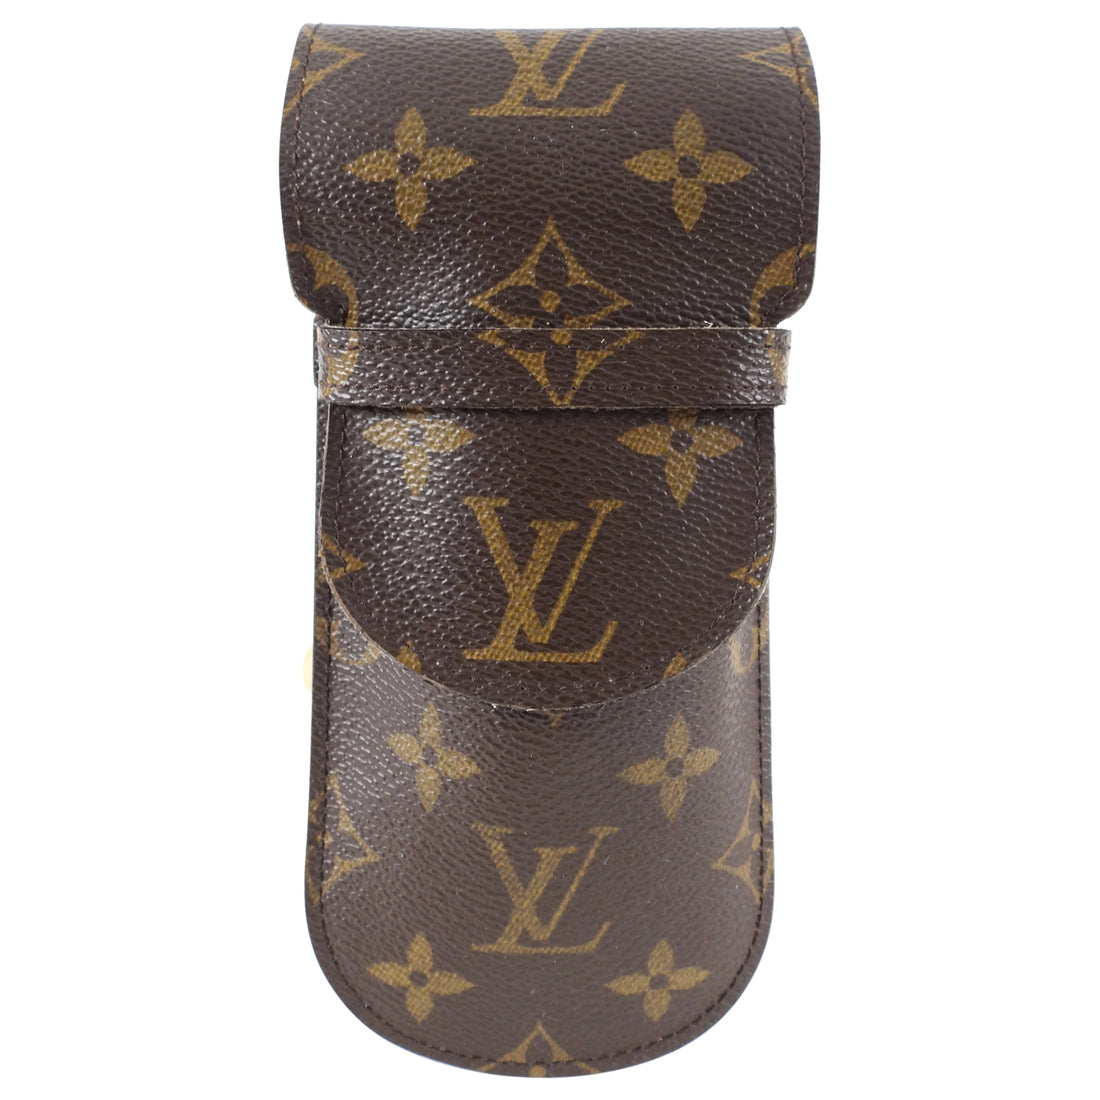 Louis Vuitton Monogram Canvas Eyeglasses Case – I MISS YOU VINTAGE